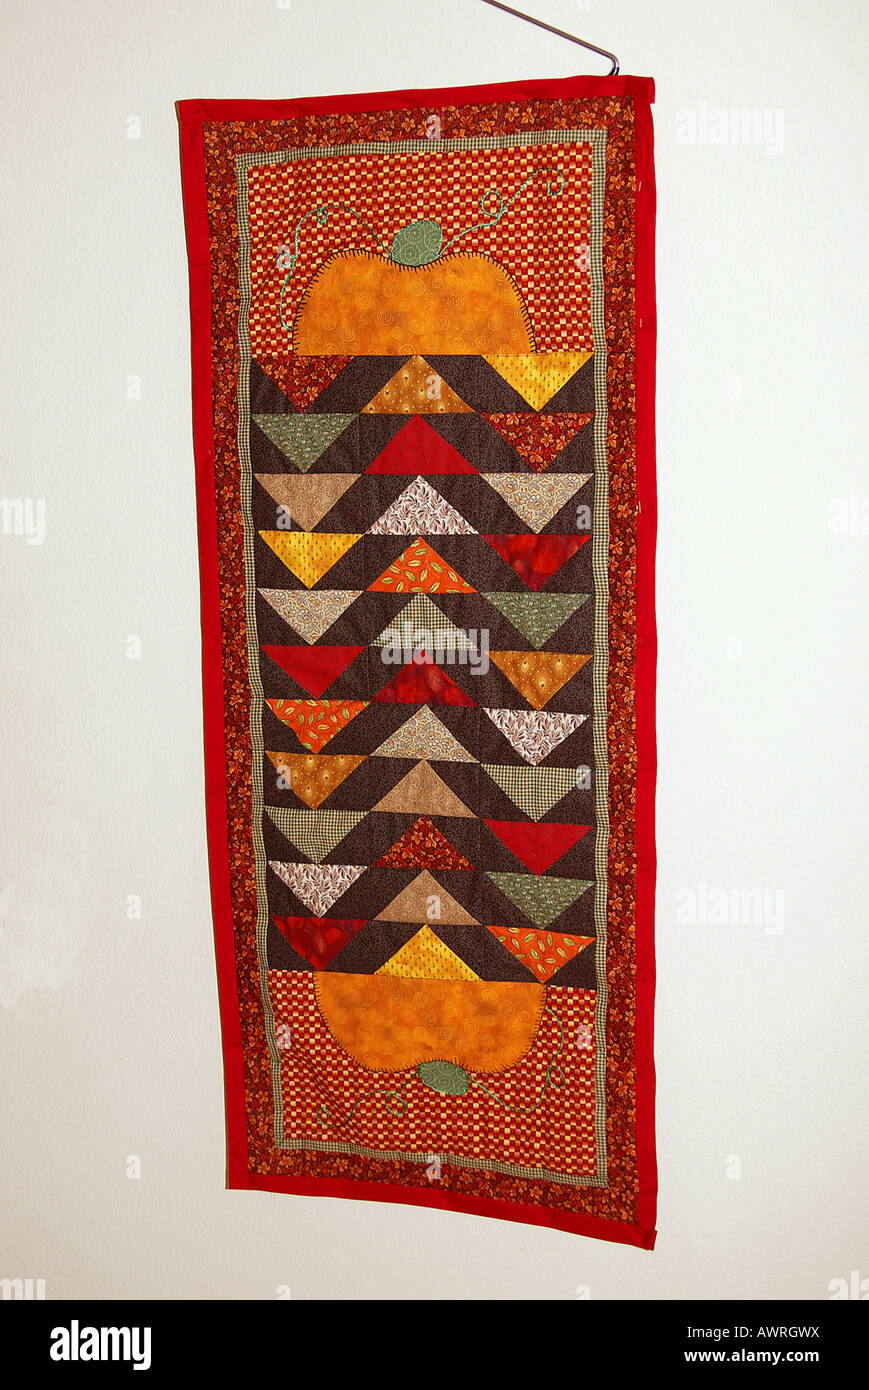 Handgefertigte bunte genähten Stoff Wandbehang mit herbstlichen Farben Kürbis-Design Design nicht freigegeben Stockfoto